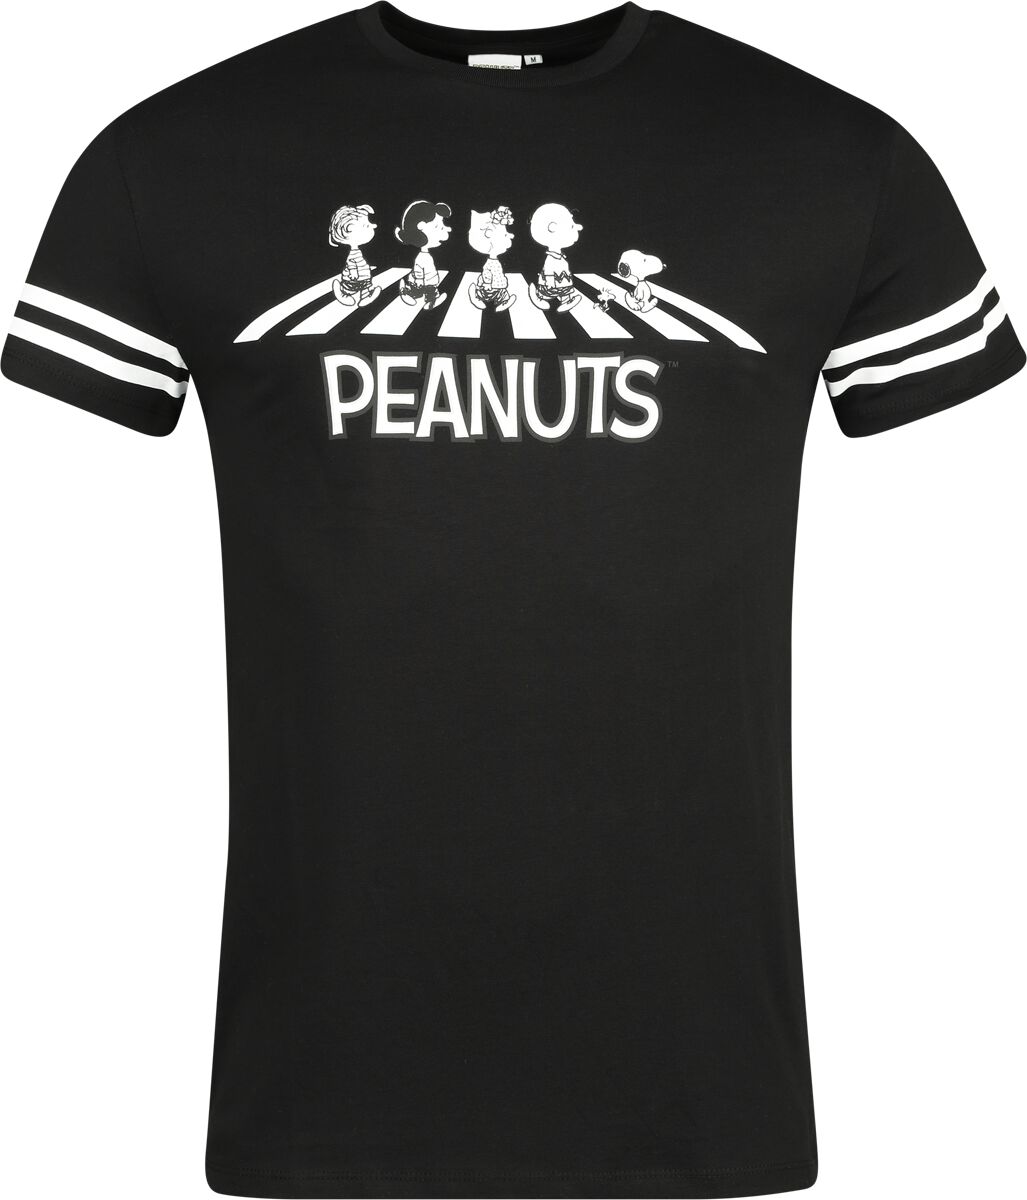 Peanuts T-Shirt - Walking Group - S bis 3XL - für Männer - Größe L - multicolor  - EMP exklusives Merchandise!